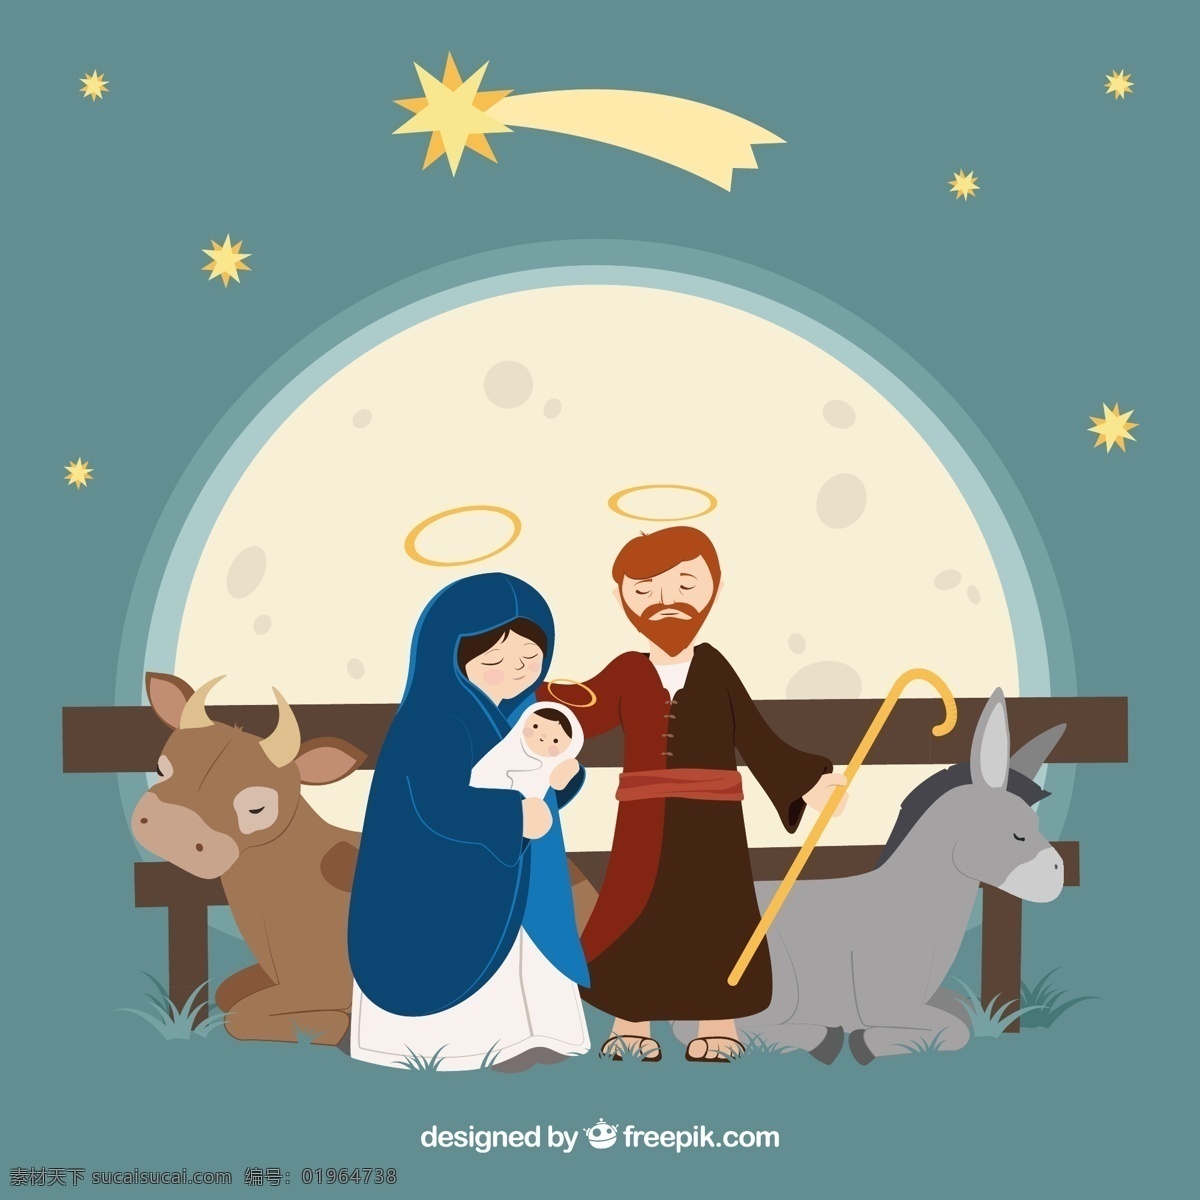 卡通 耶稣 诞生 插画 矢量 婴儿 耶稣诞生 启明星 玛丽娅 约瑟 马棚 牛 驴子 光环 月亮 矢量图...